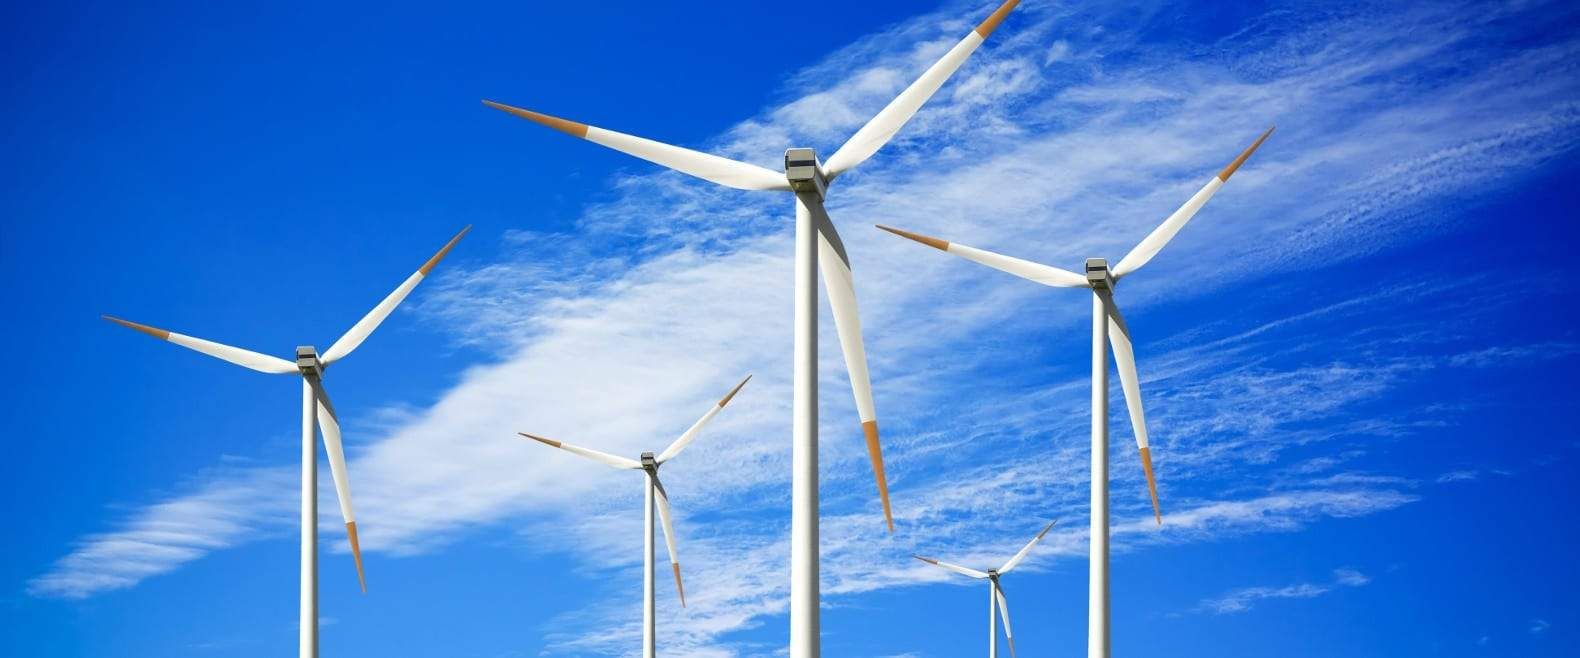 На Запоріжжі введено в експлуатацію перші сім турбін Приморської вітрової електростанції